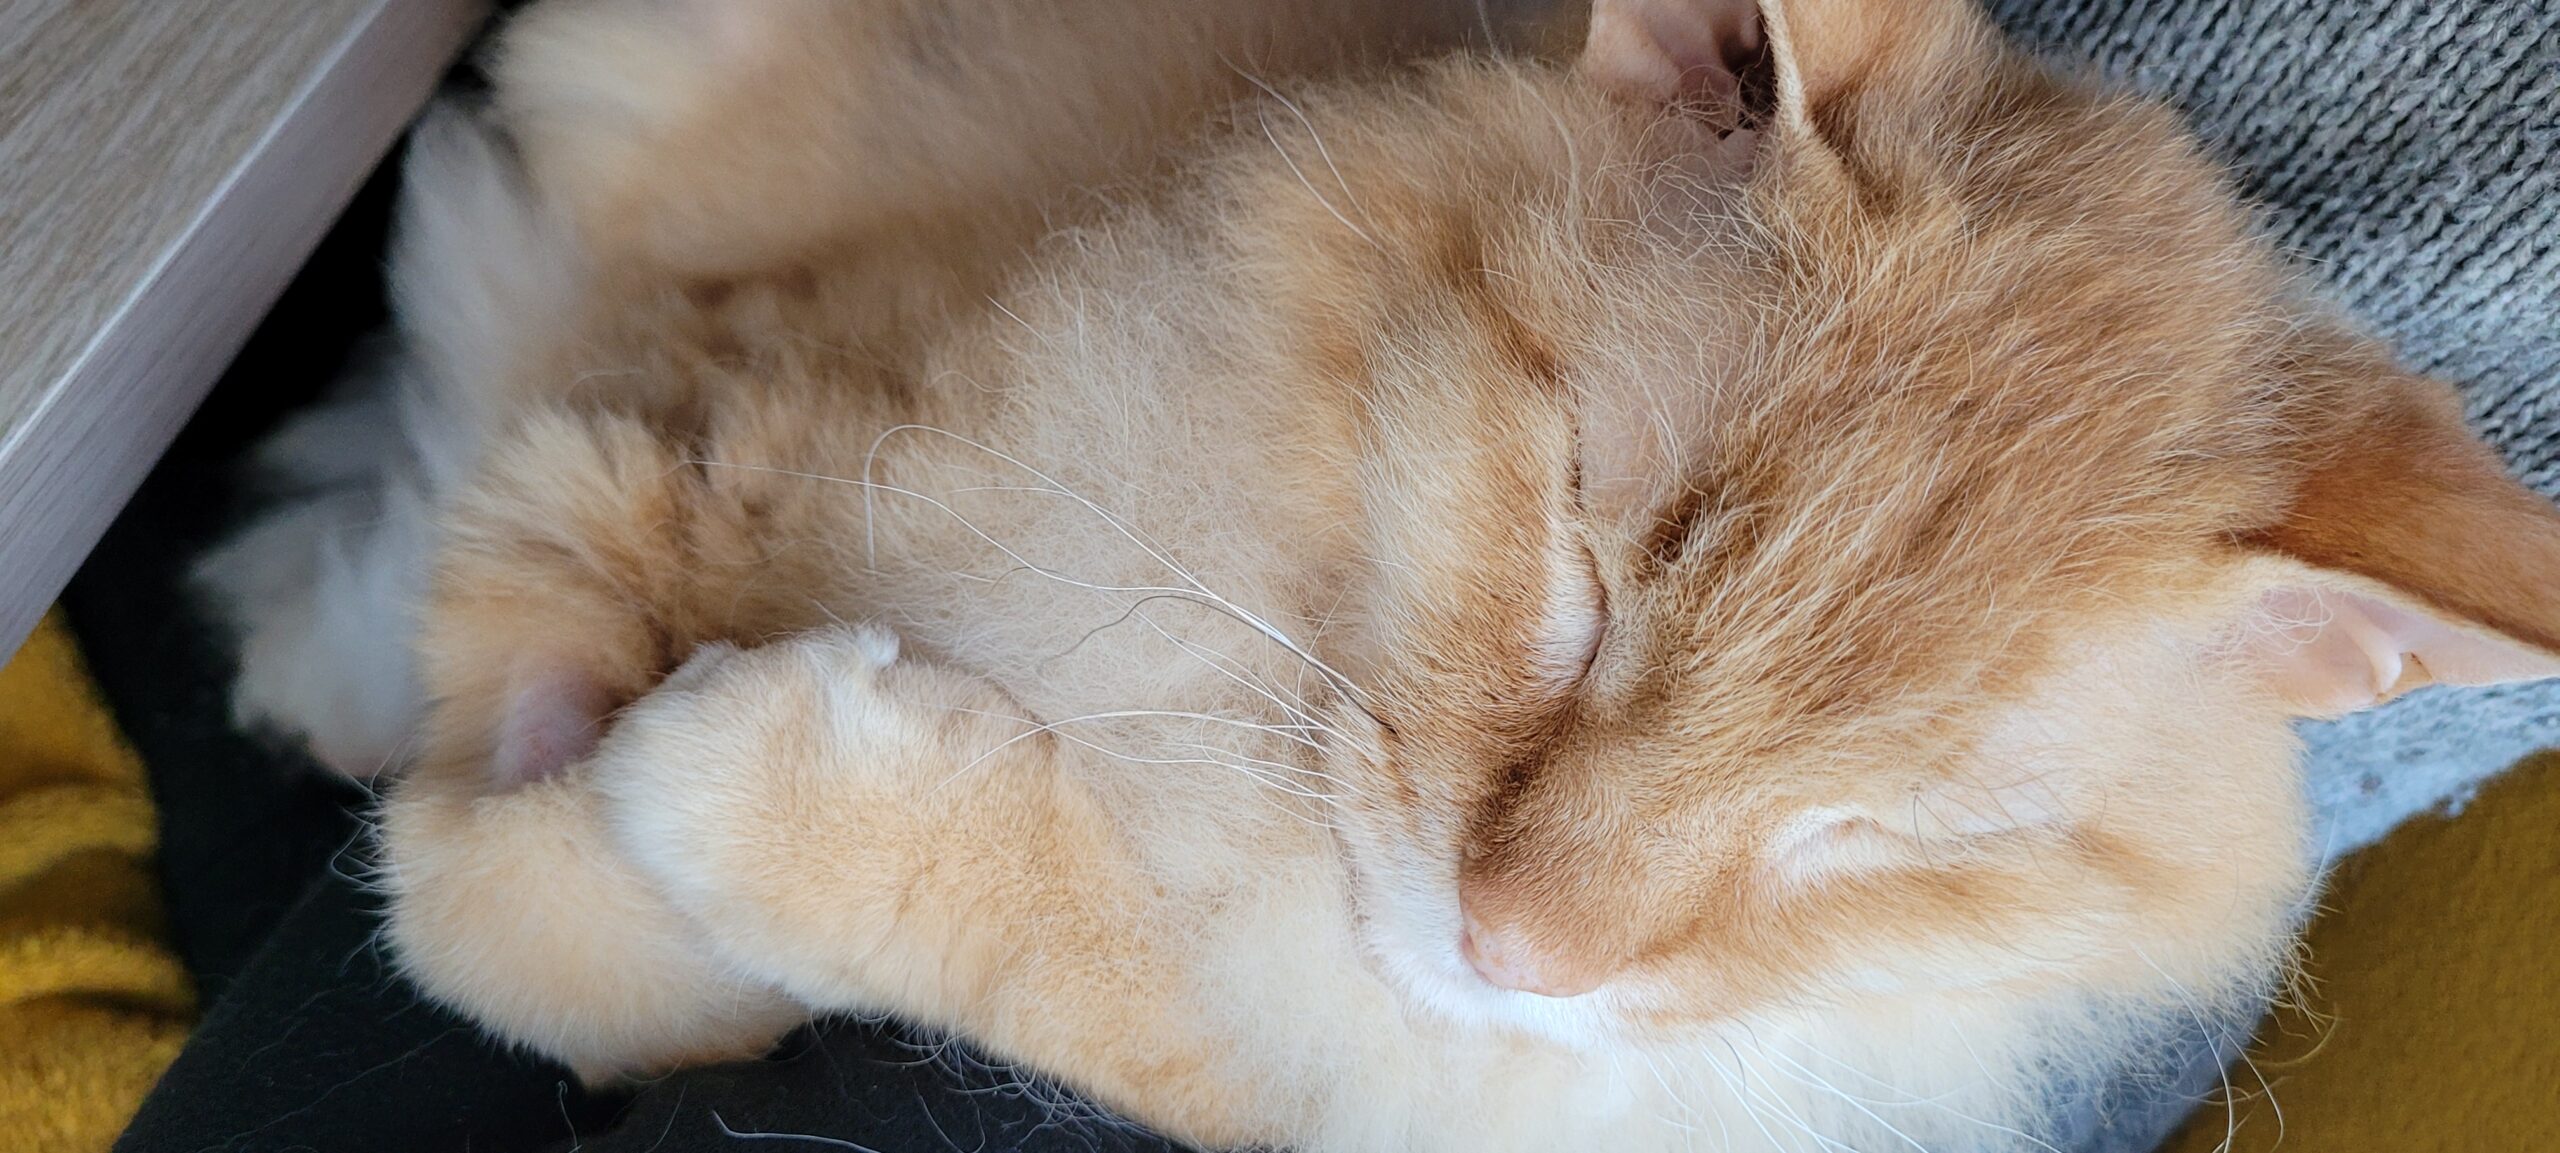 a fuzzy orange cat sleeping in a lap